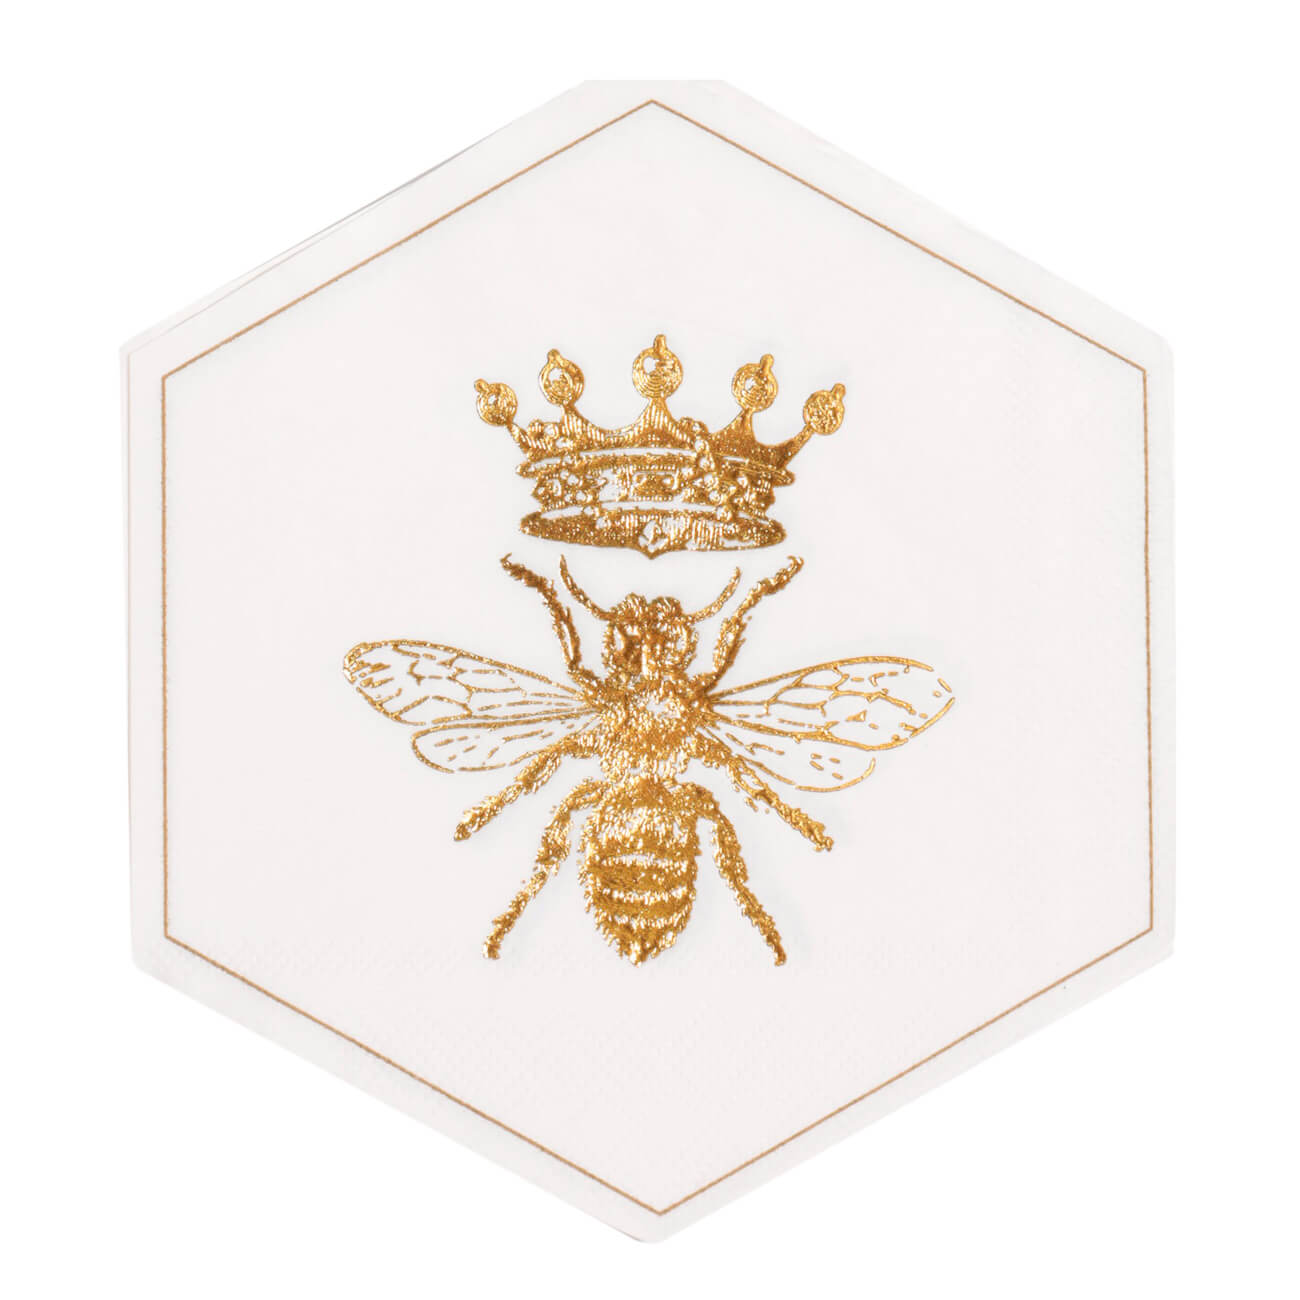 Салфетки бумажные, 32 см, 20 шт, фигурные, белые, Пчела, Honey целлюлозные губчатые салфетки paclan